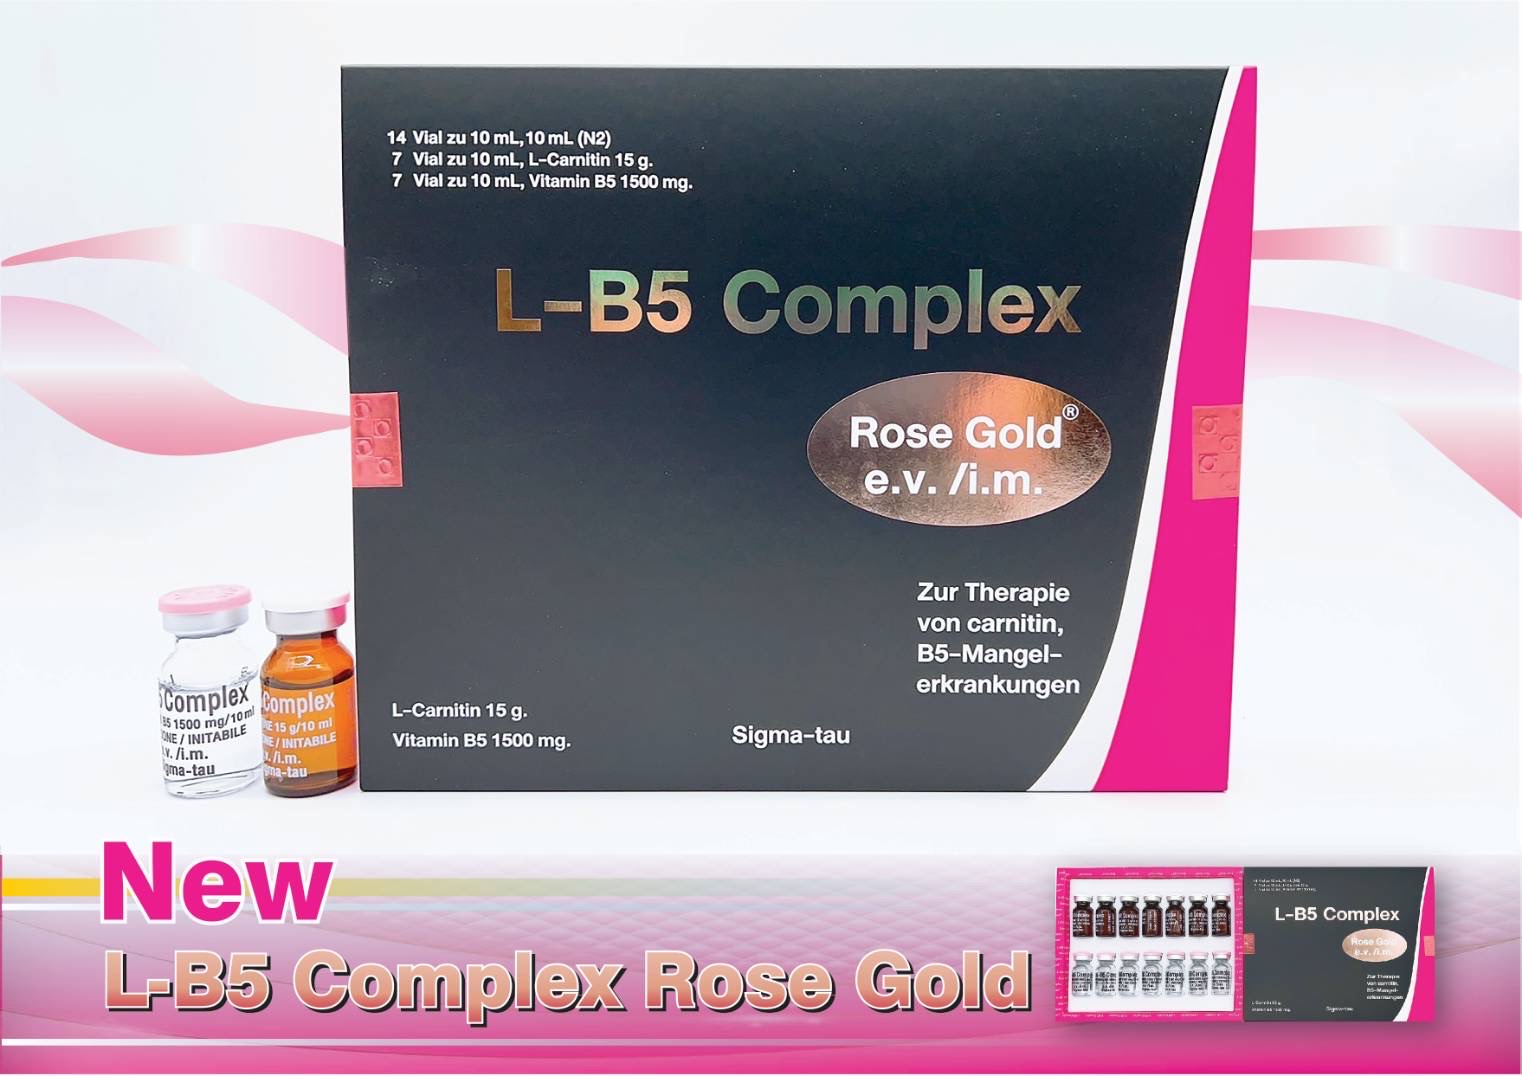 LB5 Complex Rose Gold